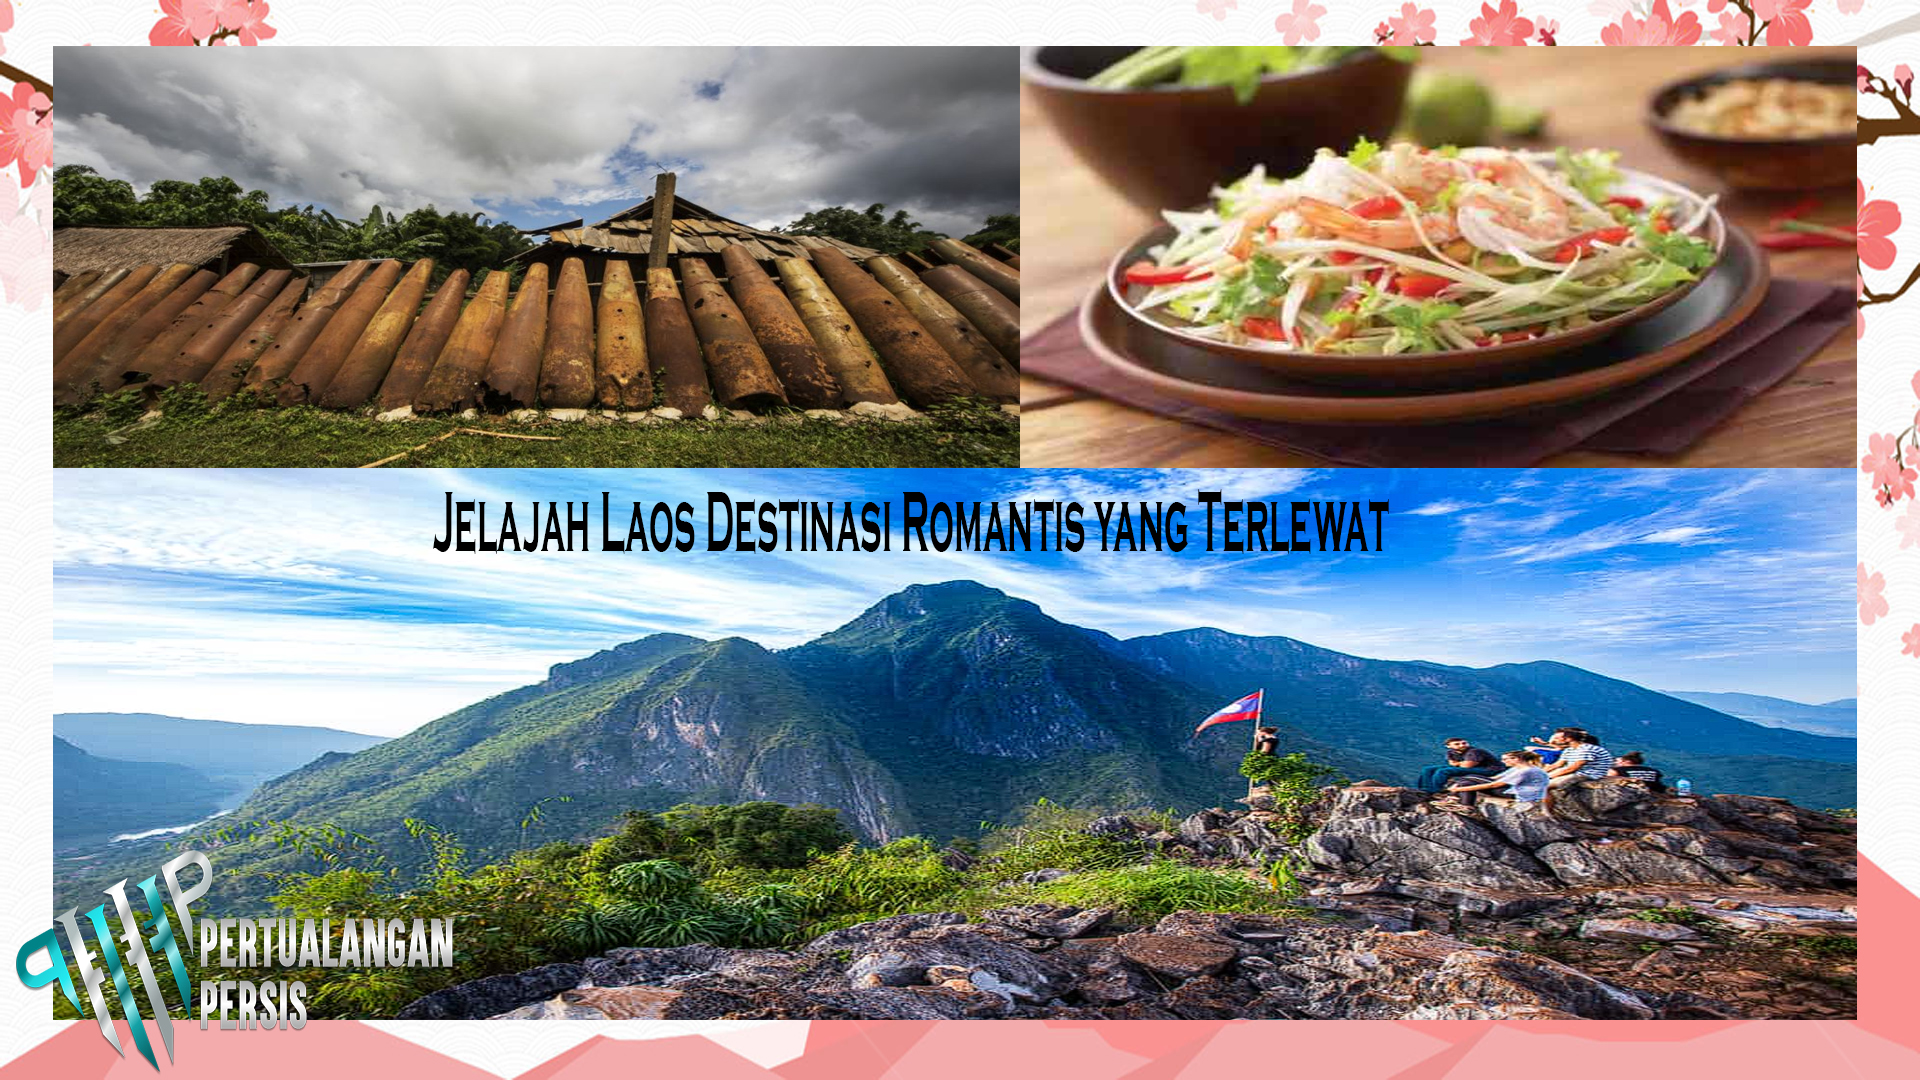 Jelajah Laos Destinasi Romantis yang Terlewat